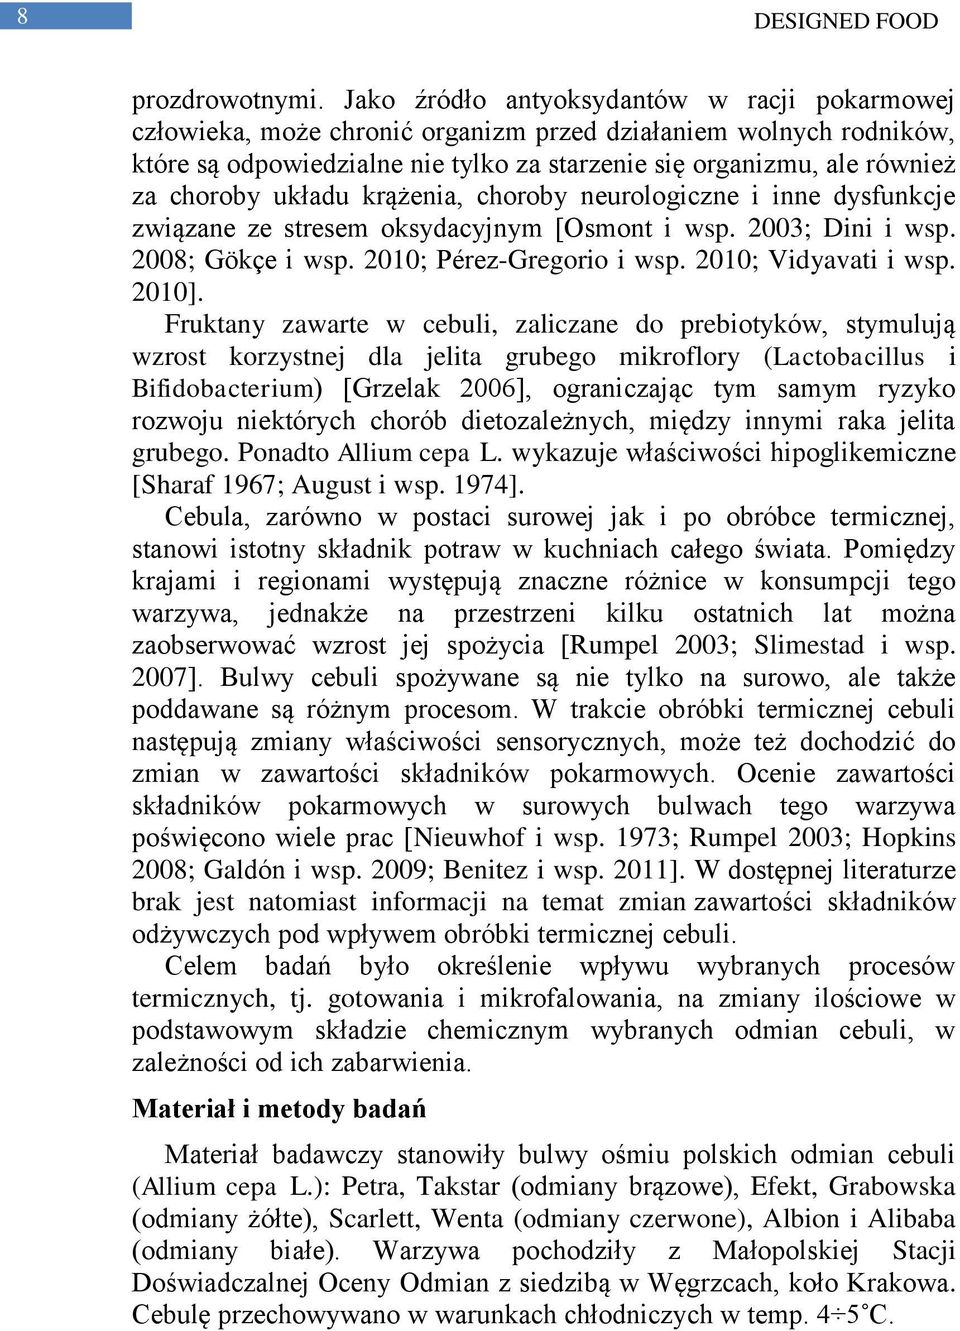 układu krążenia, choroby neurologiczne i inne dysfunkcje związane ze stresem oksydacyjnym [Osmont i wsp. 2003; Dini i wsp. 2008; Gökçe i wsp. 2010; Pérez-Gregorio i wsp. 2010; Vidyavati i wsp. 2010].